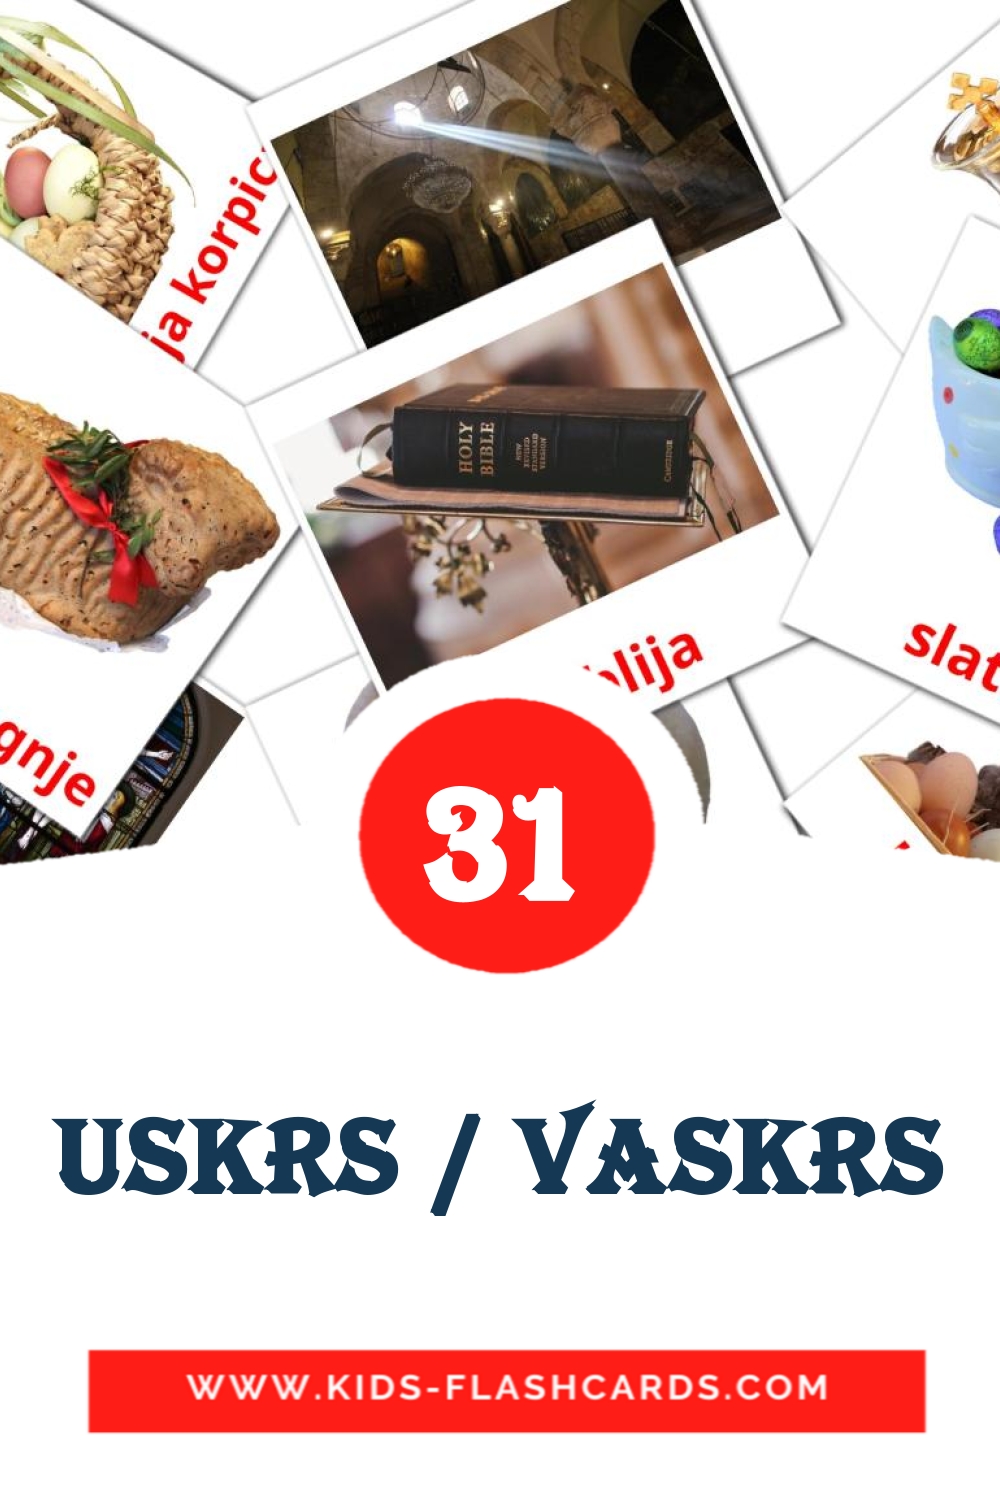 31 Uskrs / Vaskrs fotokaarten voor kleuters in het servisch